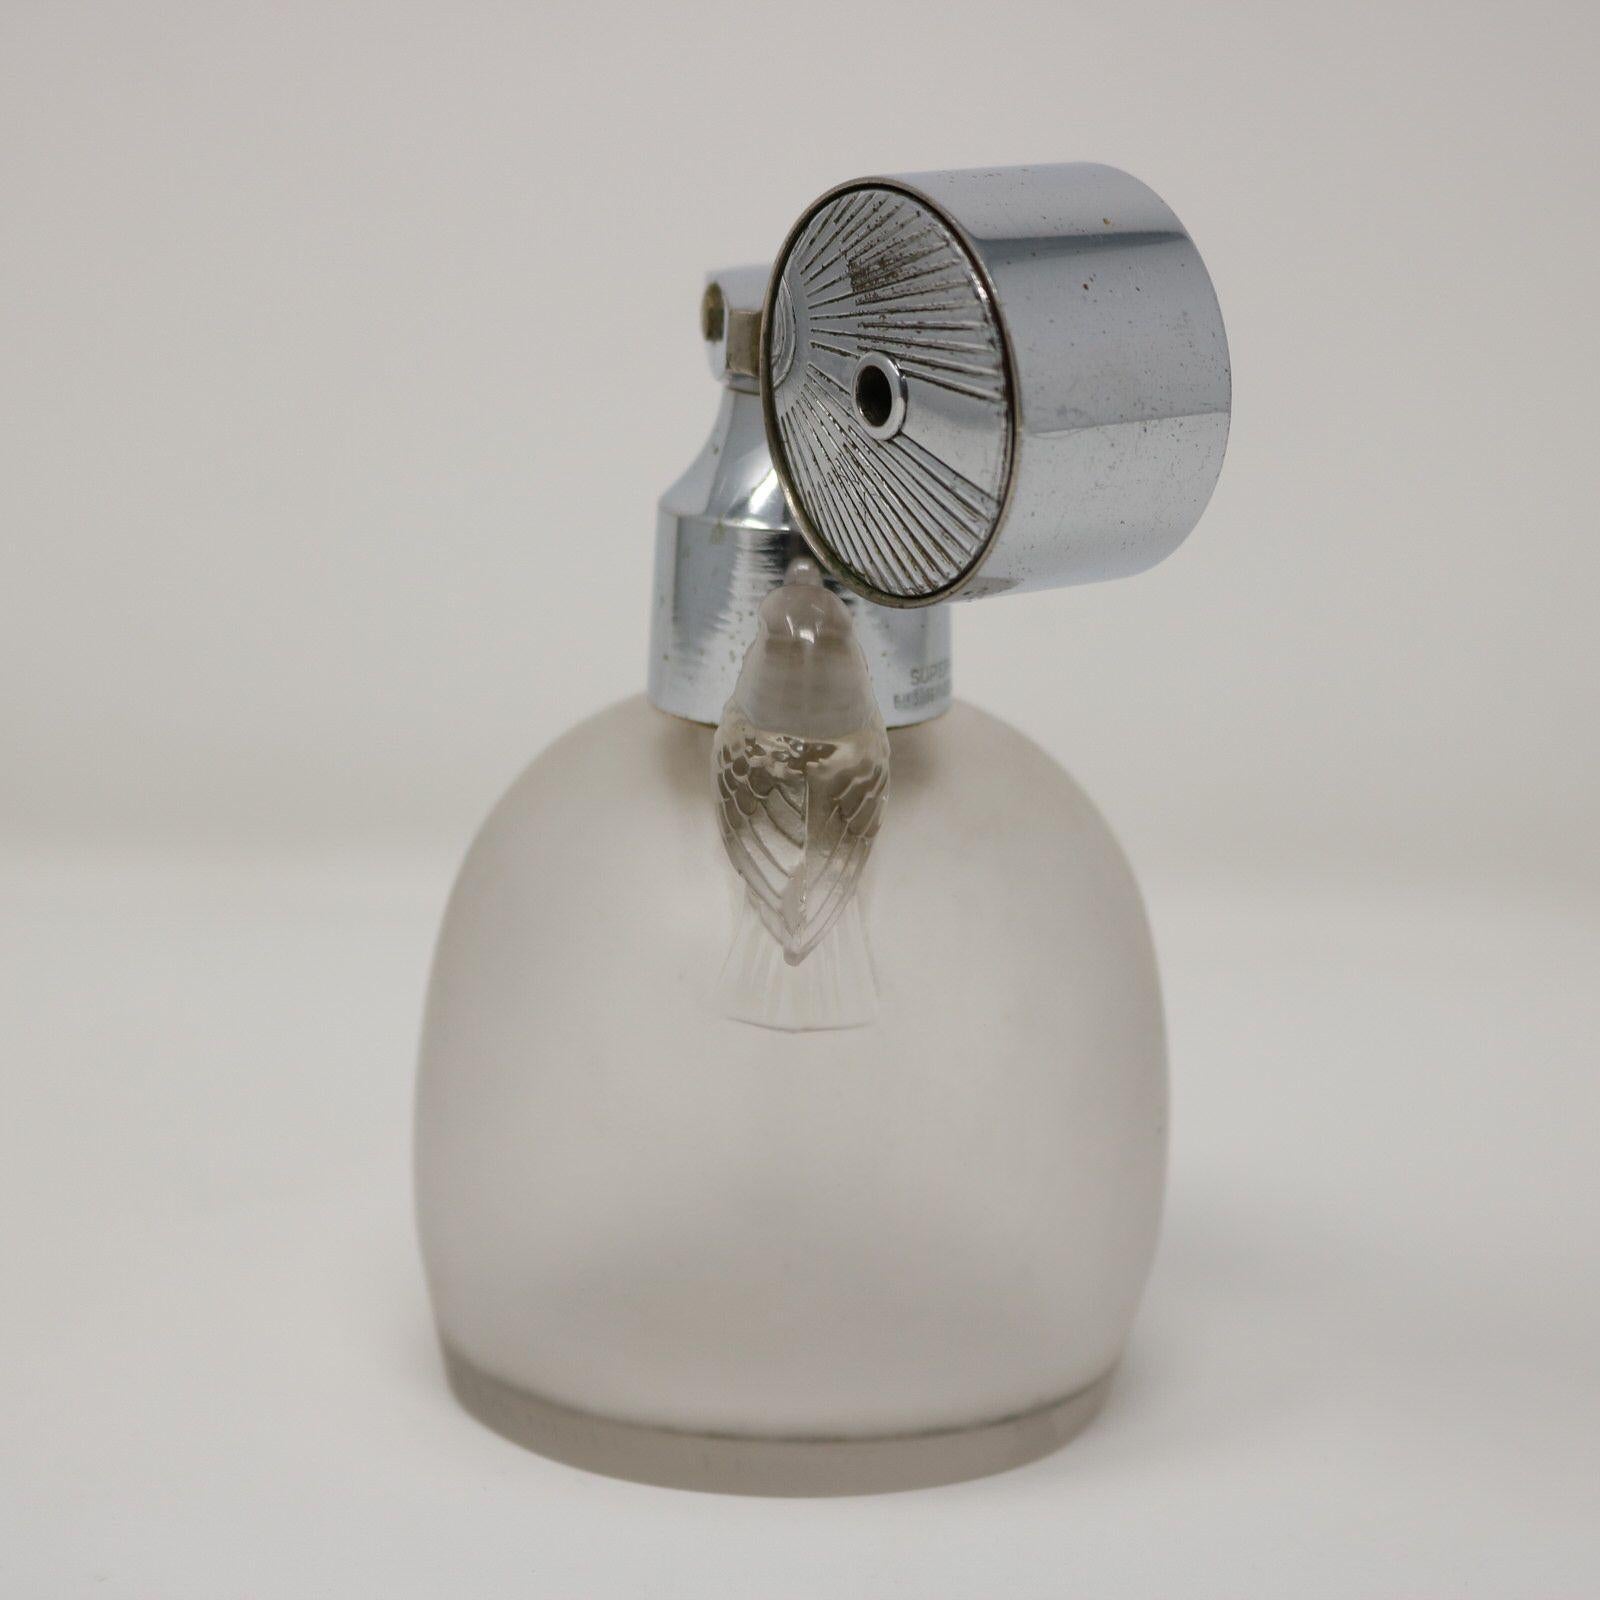 Parfümflakon aus mattiertem Glas 'Marcel Frank Perruches' von Rene Lalique mit Zerstäuber. Dieses Muster zeigt zwei Vögel, die auf beiden Seiten des Flaschenhalses sitzen. Rädchenmarke 'R LALIQUE FRANCE' um den Sockel. Buchreferenz: Marcilhac MARCEL